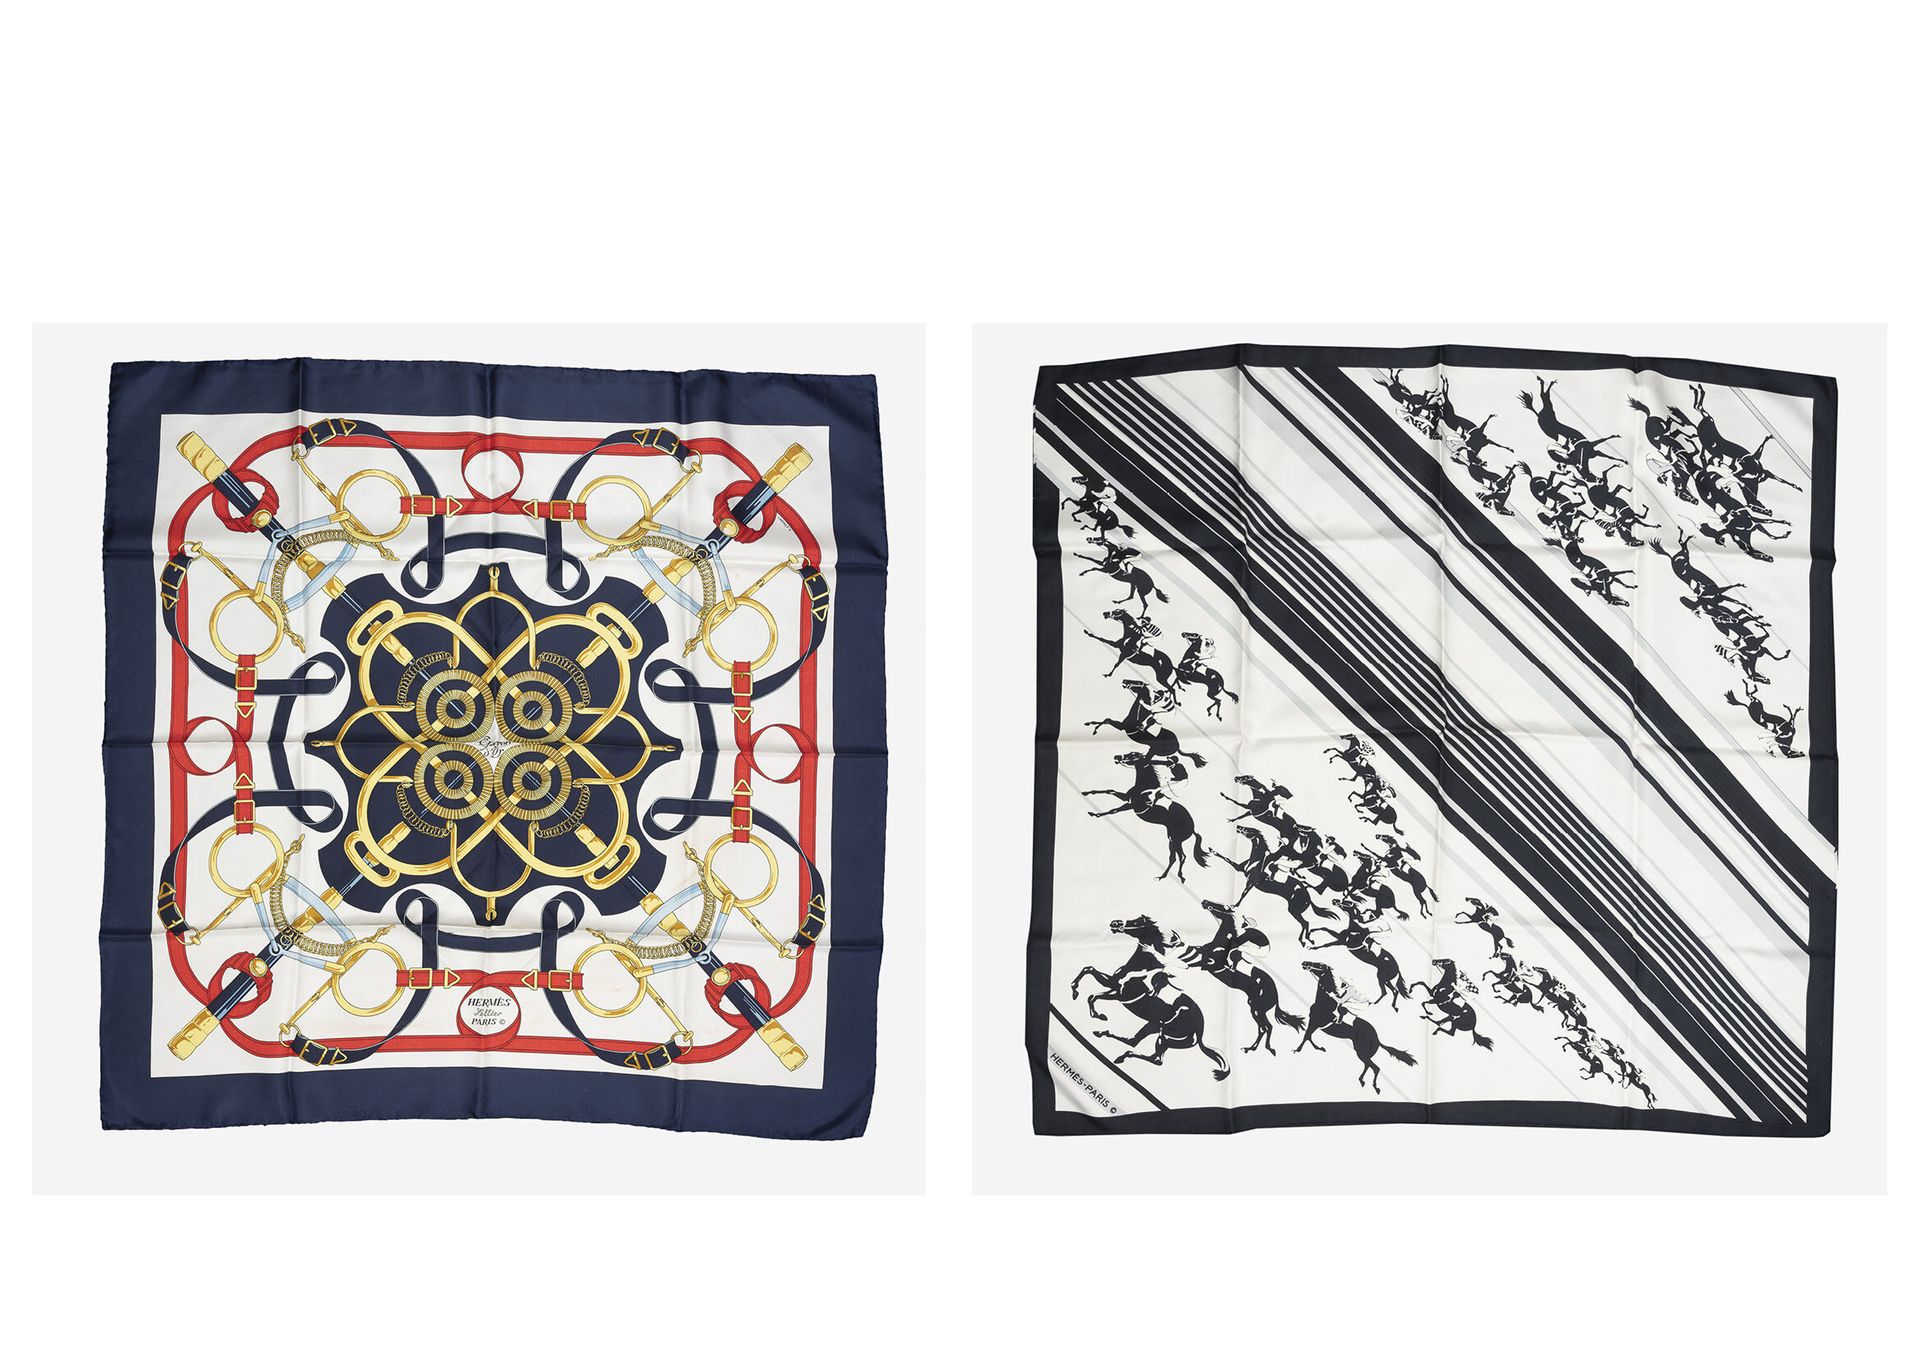 HERMES Paris Dos cuadros en sarga de seda con decoraciones impresas:

- Eperon d&hellip;